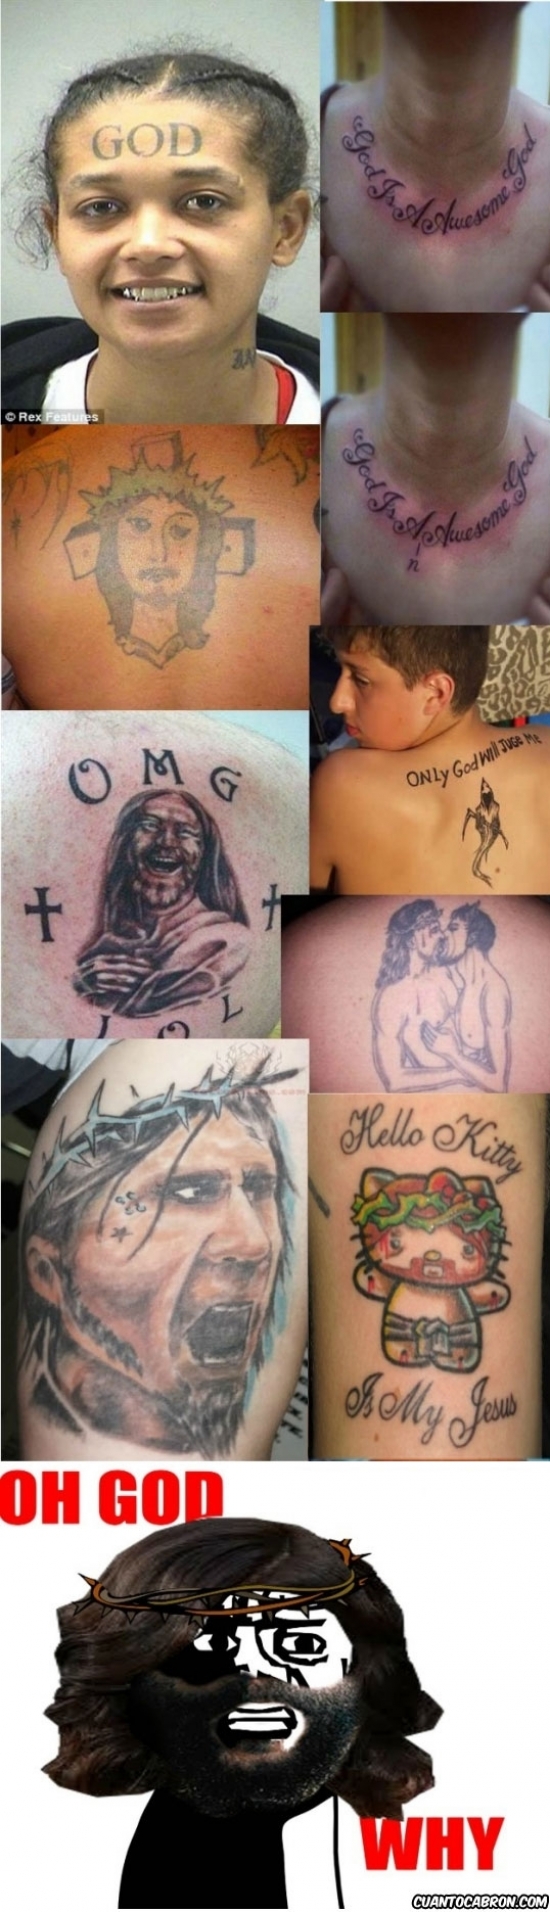 Oh_god_why - Tatuadores no muy hábiles pero religiosos